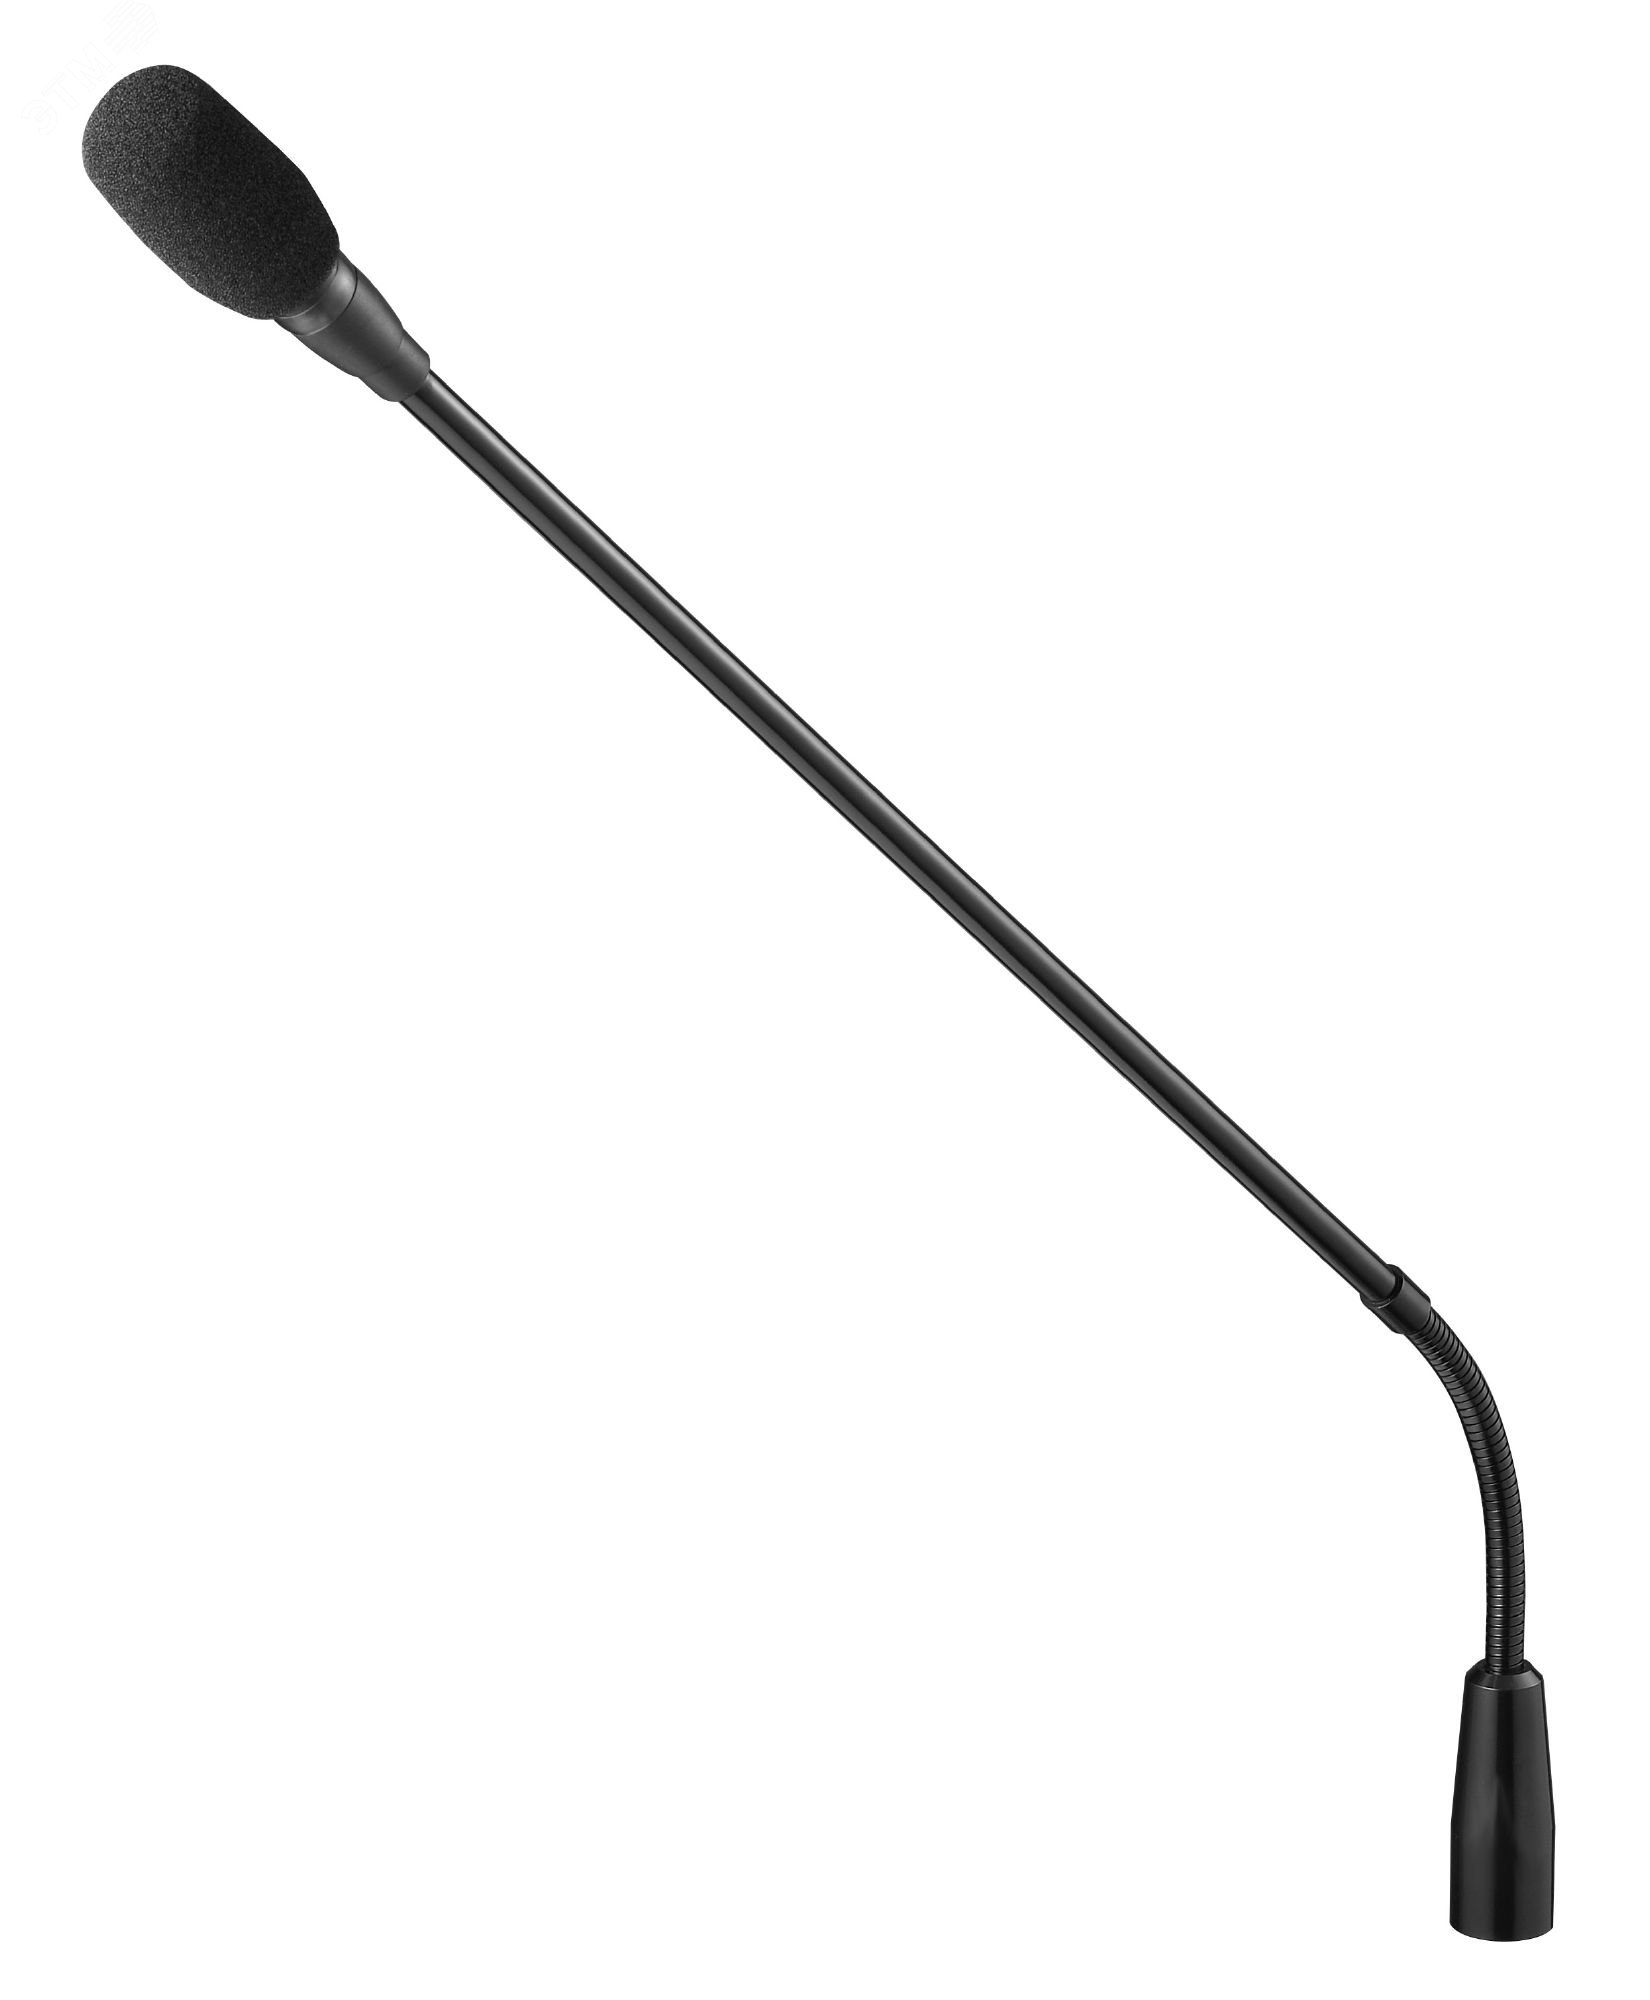 Микрофон на длинной гибкой стойке, 470 мм TS-904 TOA